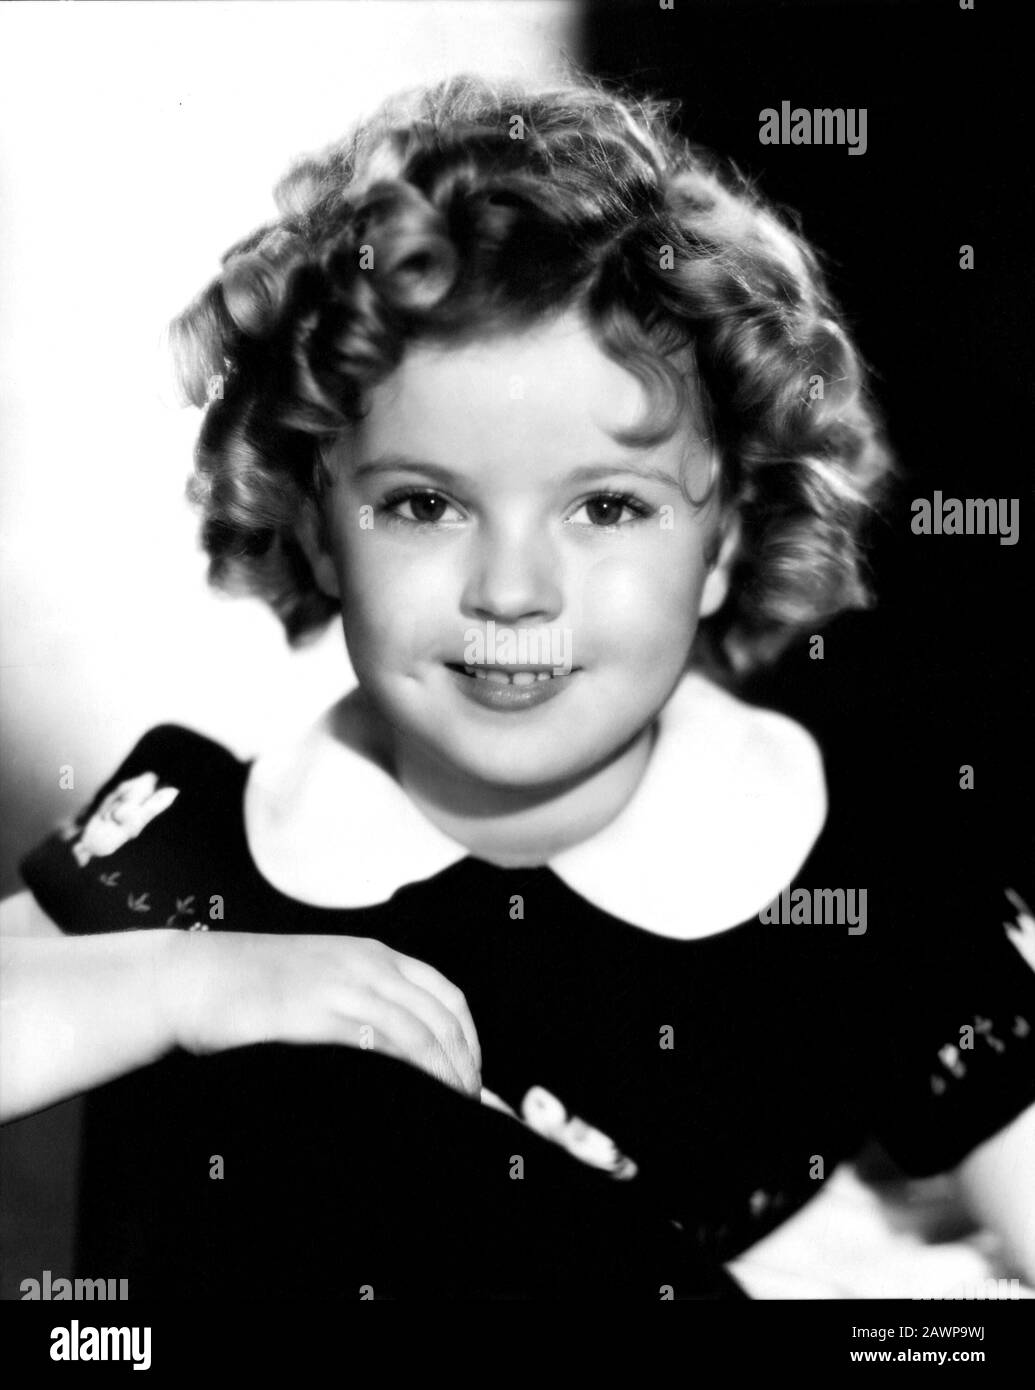 1937 CA , USA : L'enfant actrice SHIRLEY TEMPLE ( 1928 - 2014 ) , pubblica Still - FILM - CINÉMA - portrait - ritratto - boccoli - riccio Banque D'Images